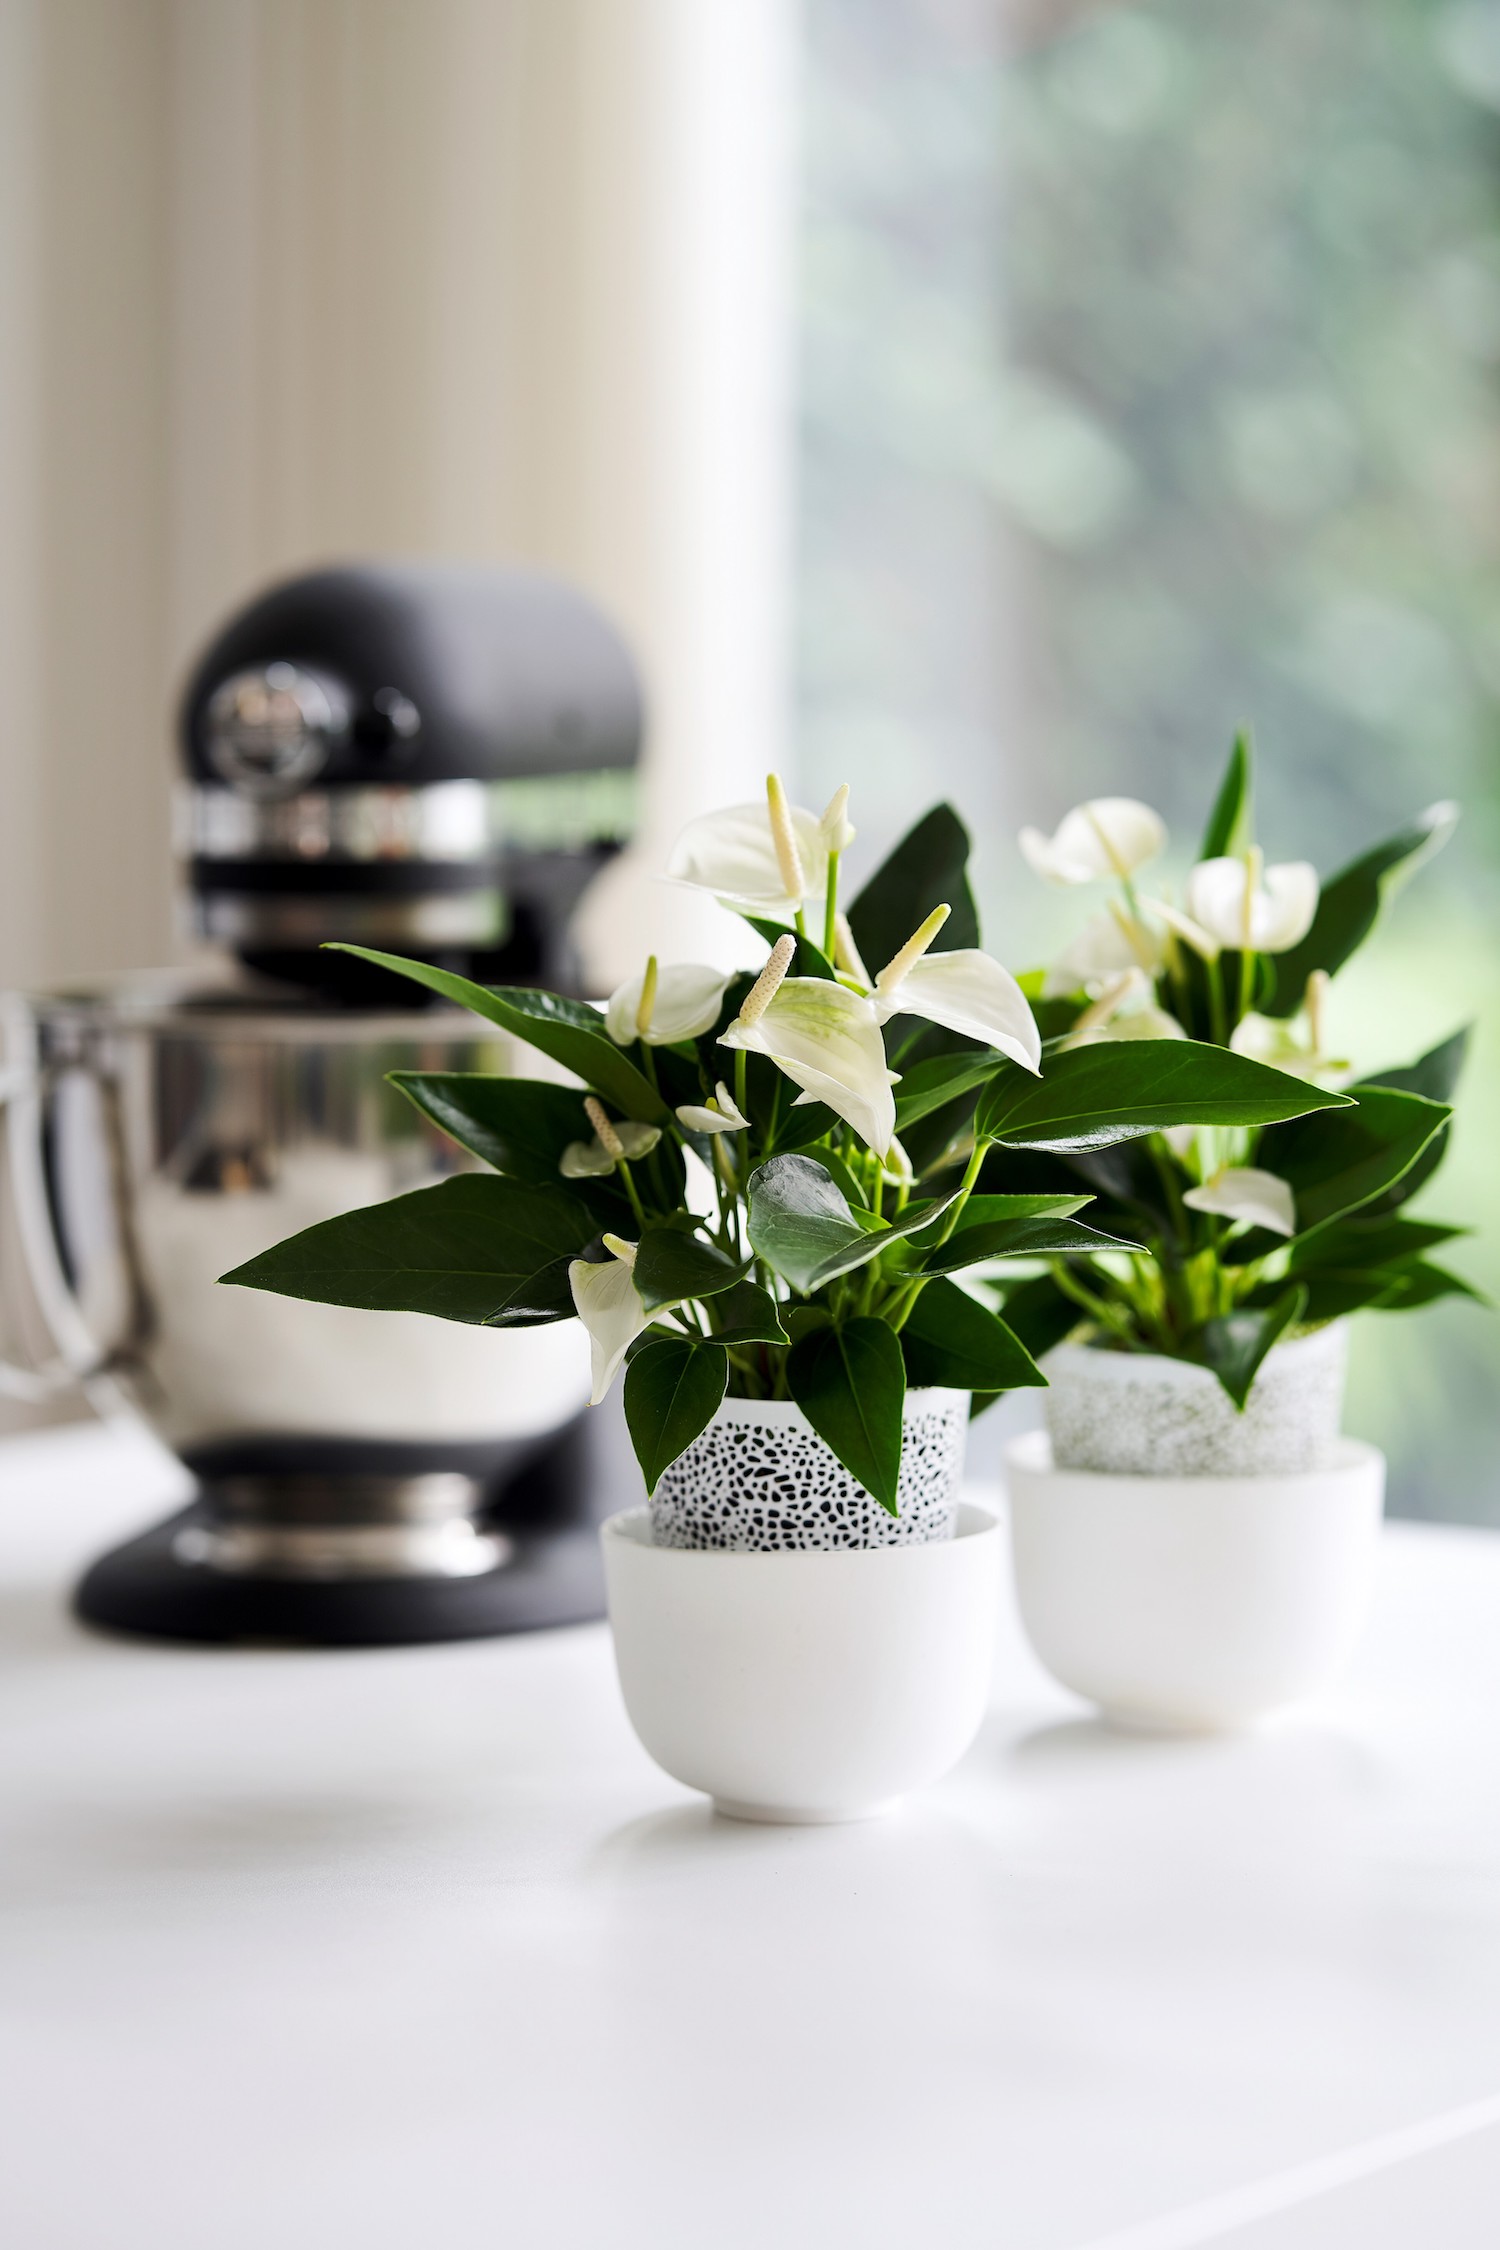 Inspiratie: zo style je de keuken met anthurium planten